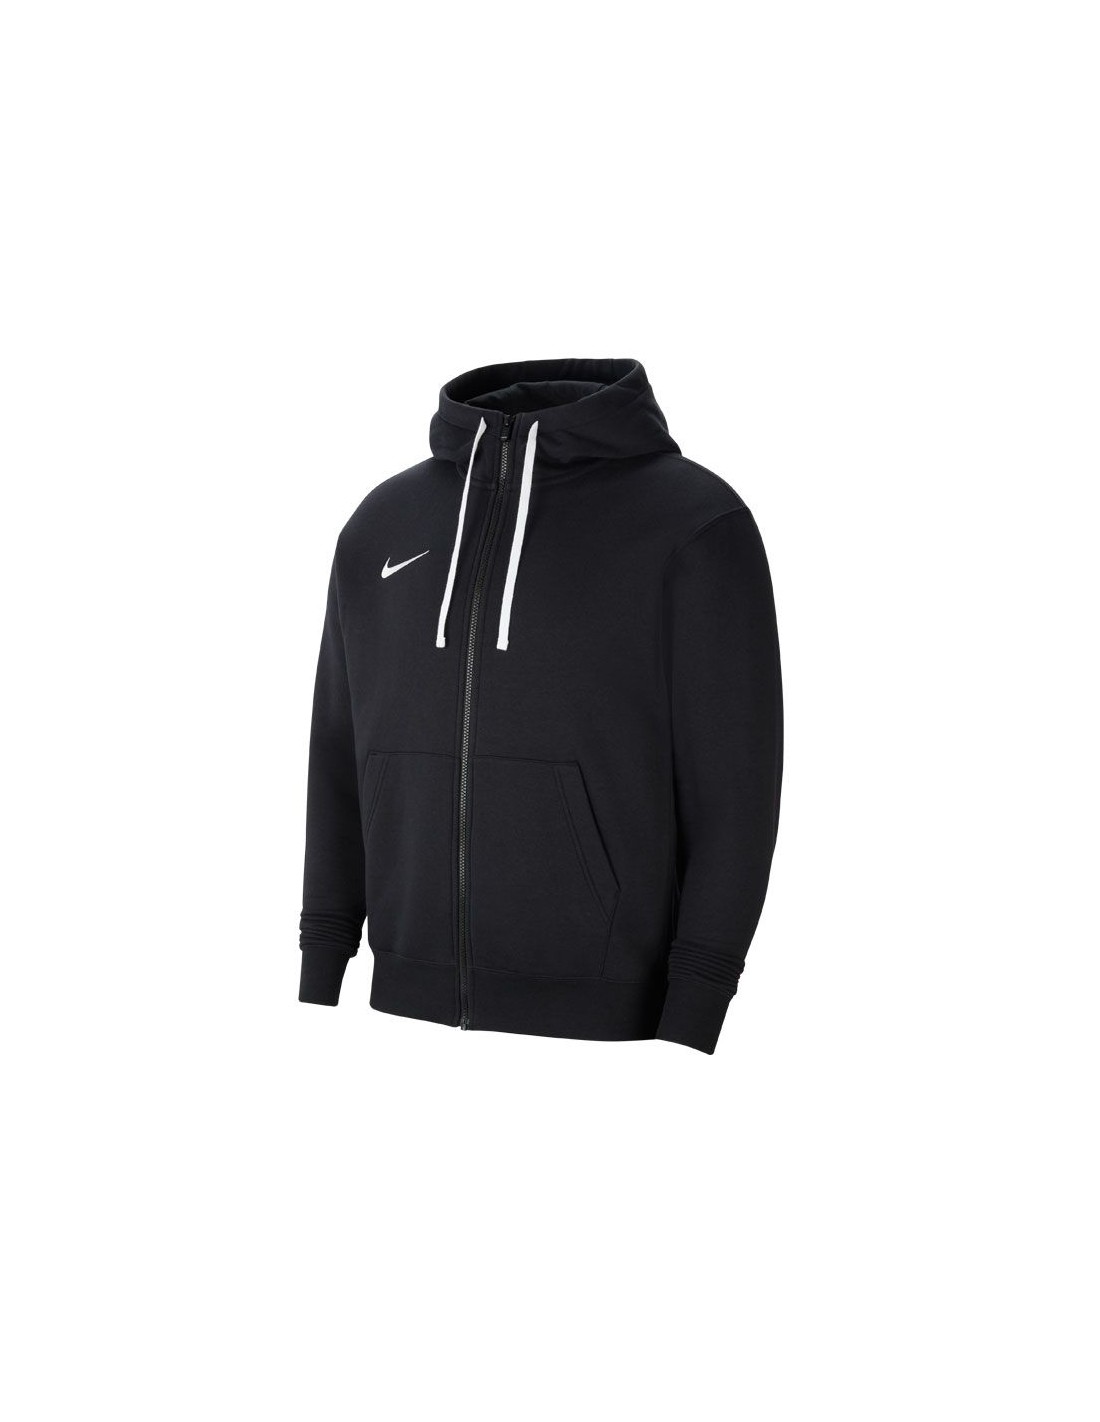 Sudadera Nike Park20 con capucha hombre algodón CW6887-010 - negro – depor8